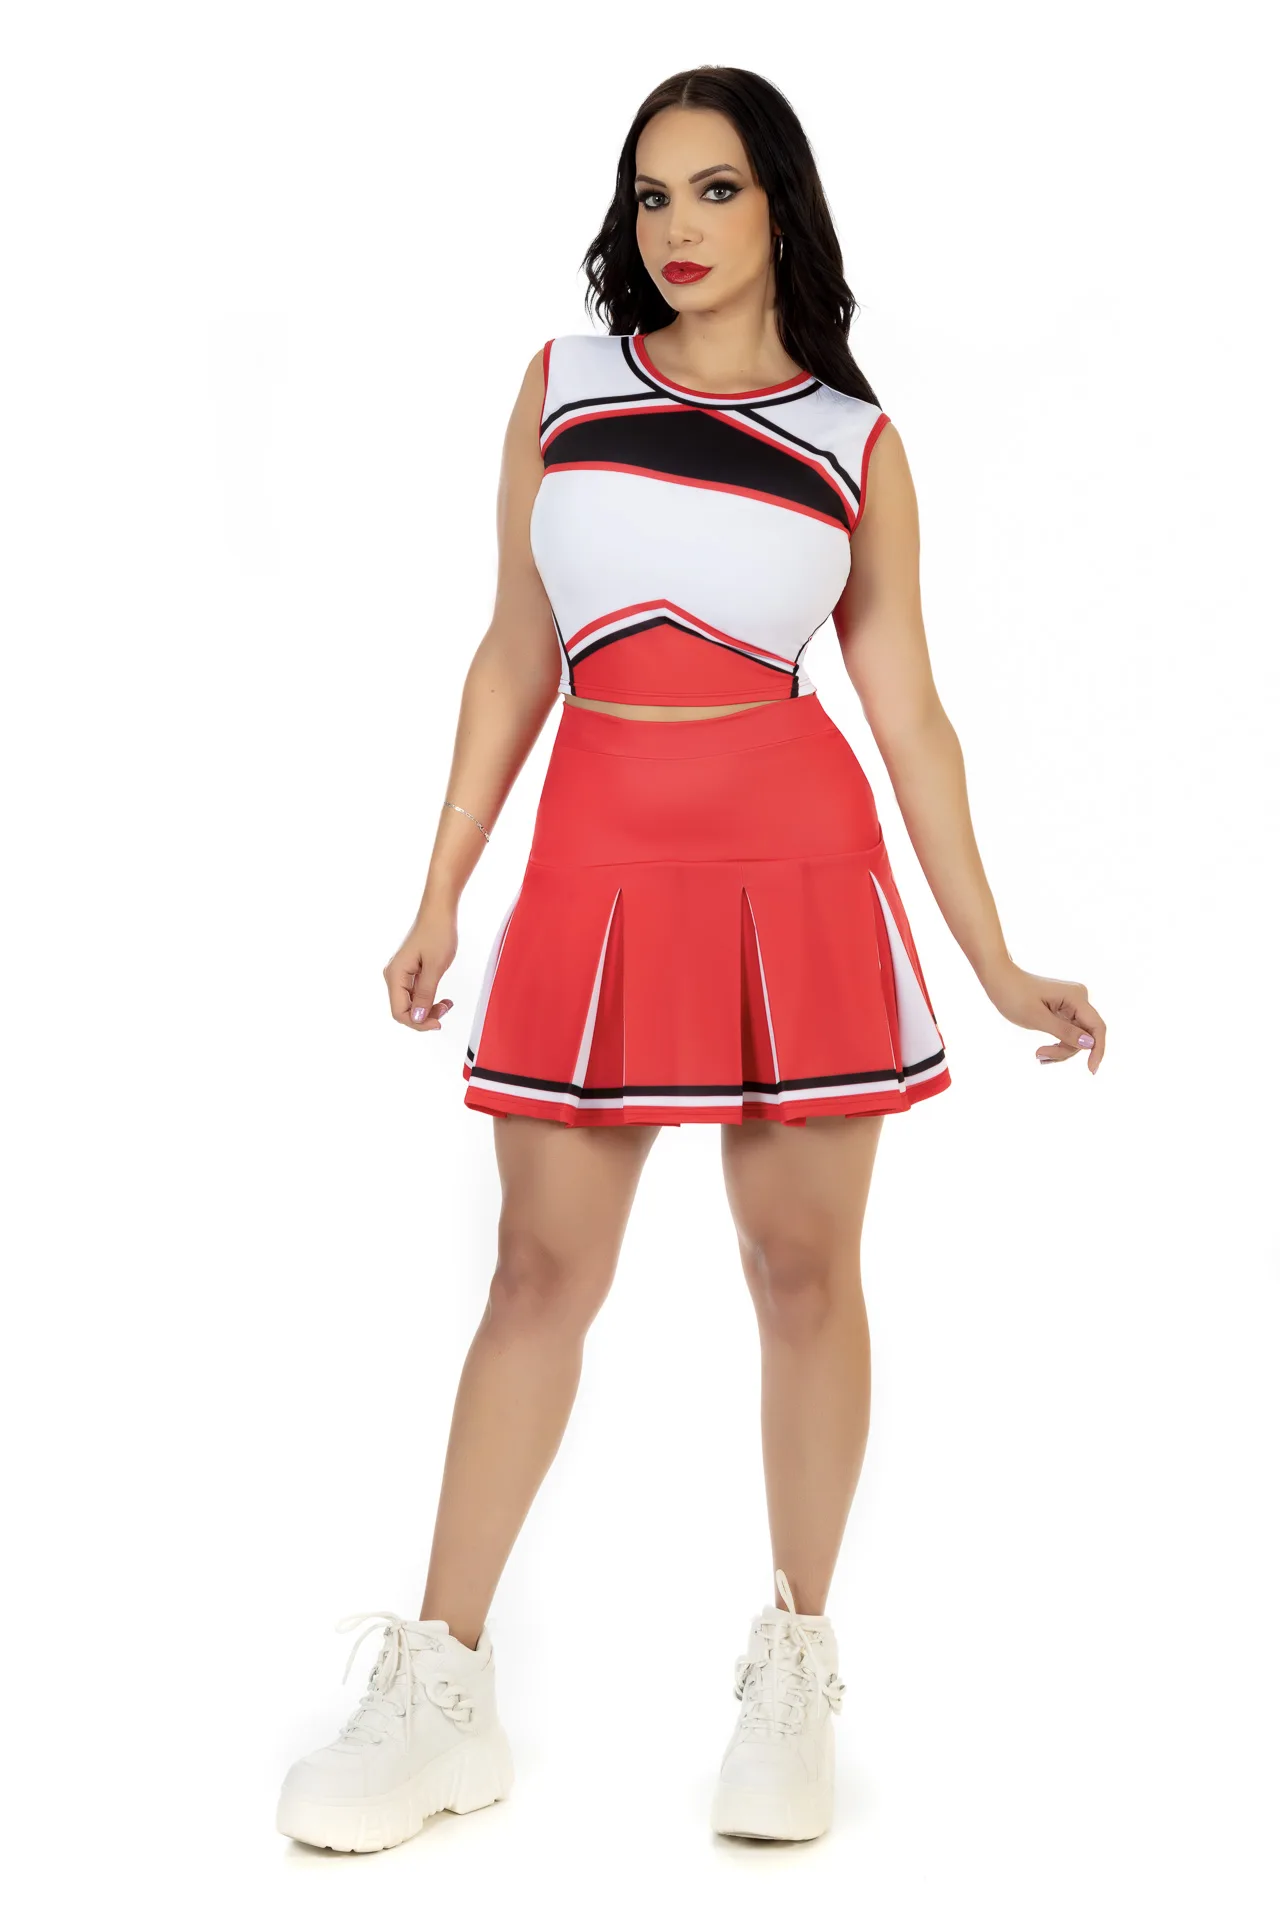 conjuntosConjunto Cheerleader - uniformes para edecanes